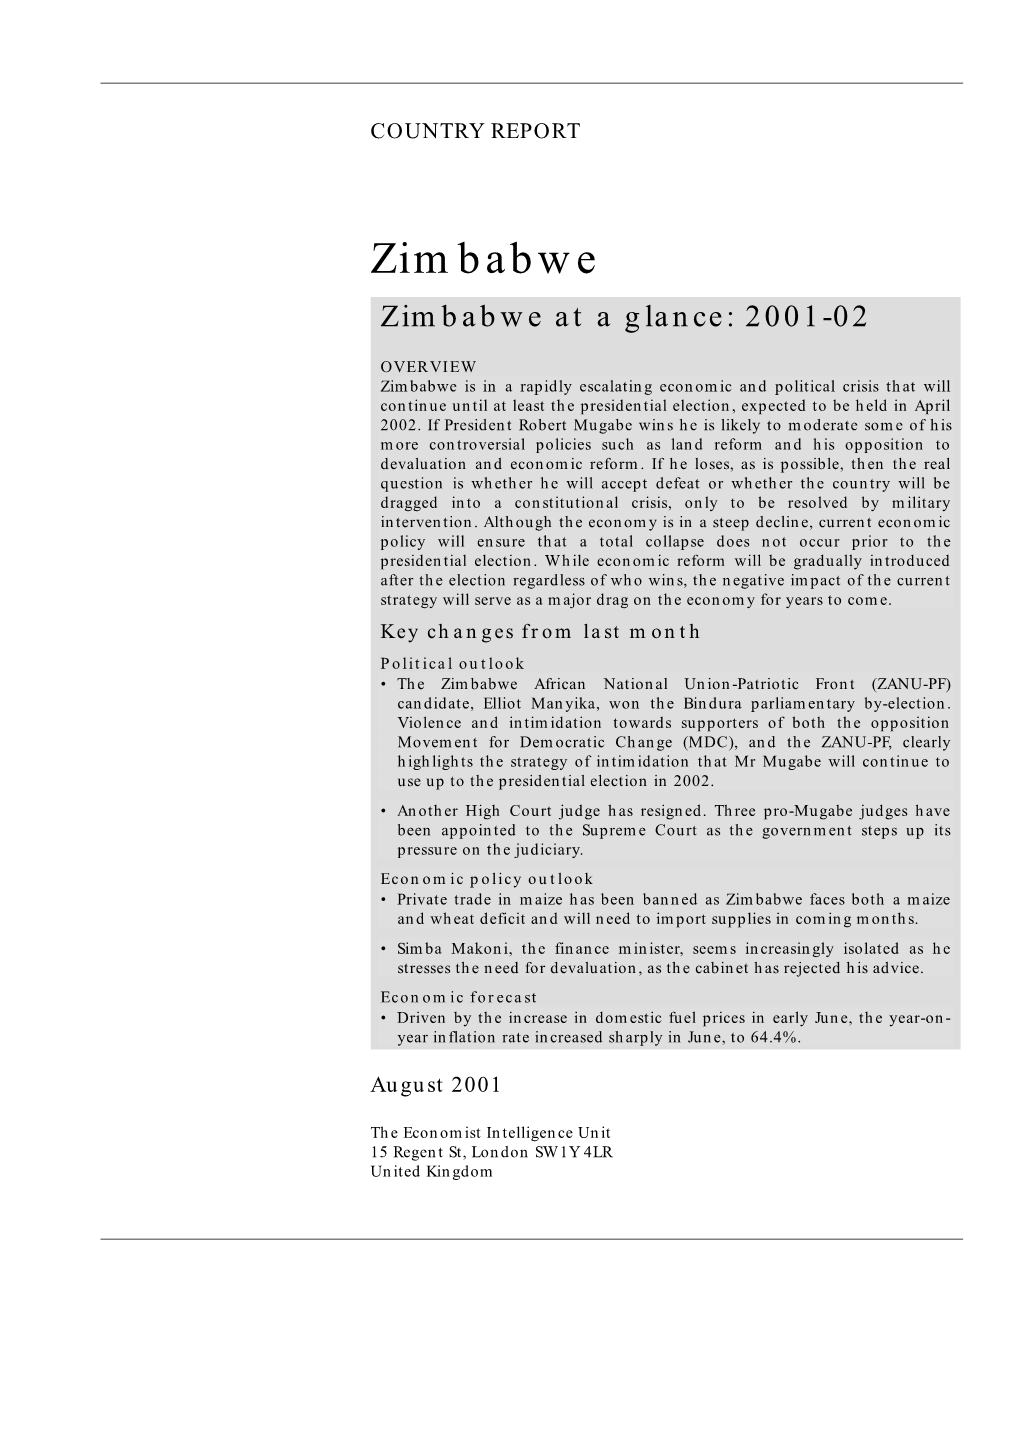 Zimbabwe Zimbabwe at a Glance: 2001-02